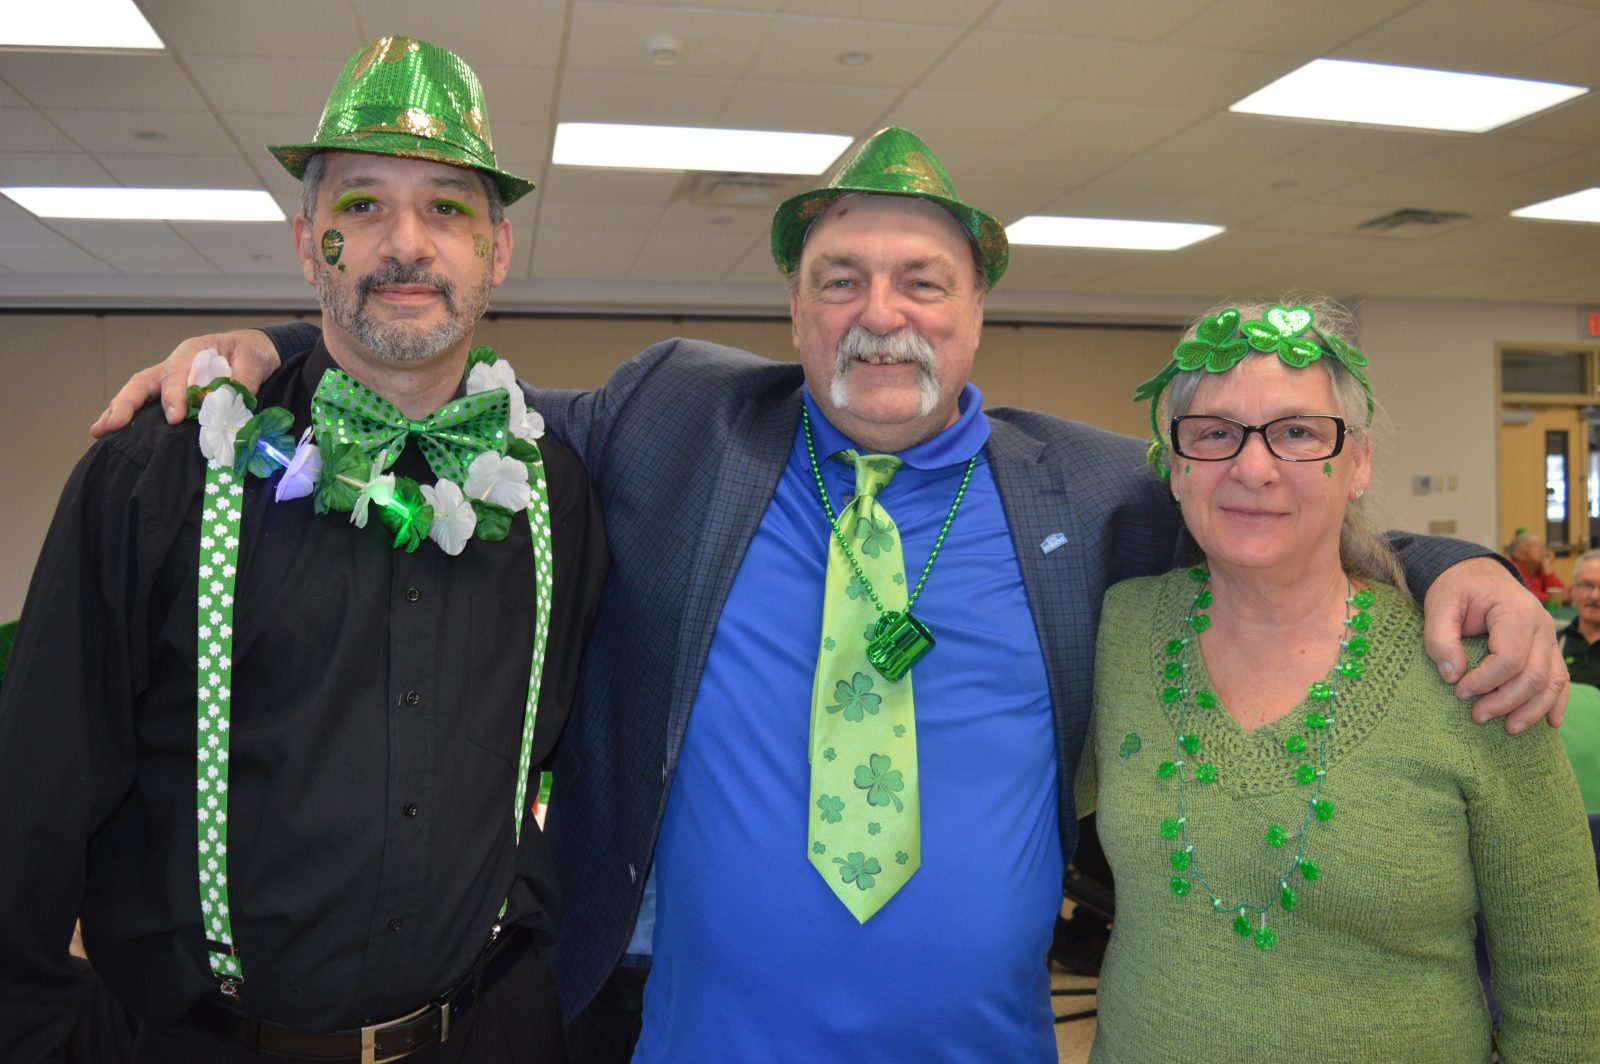 Long Sault celebrates St. Patrick’s Day